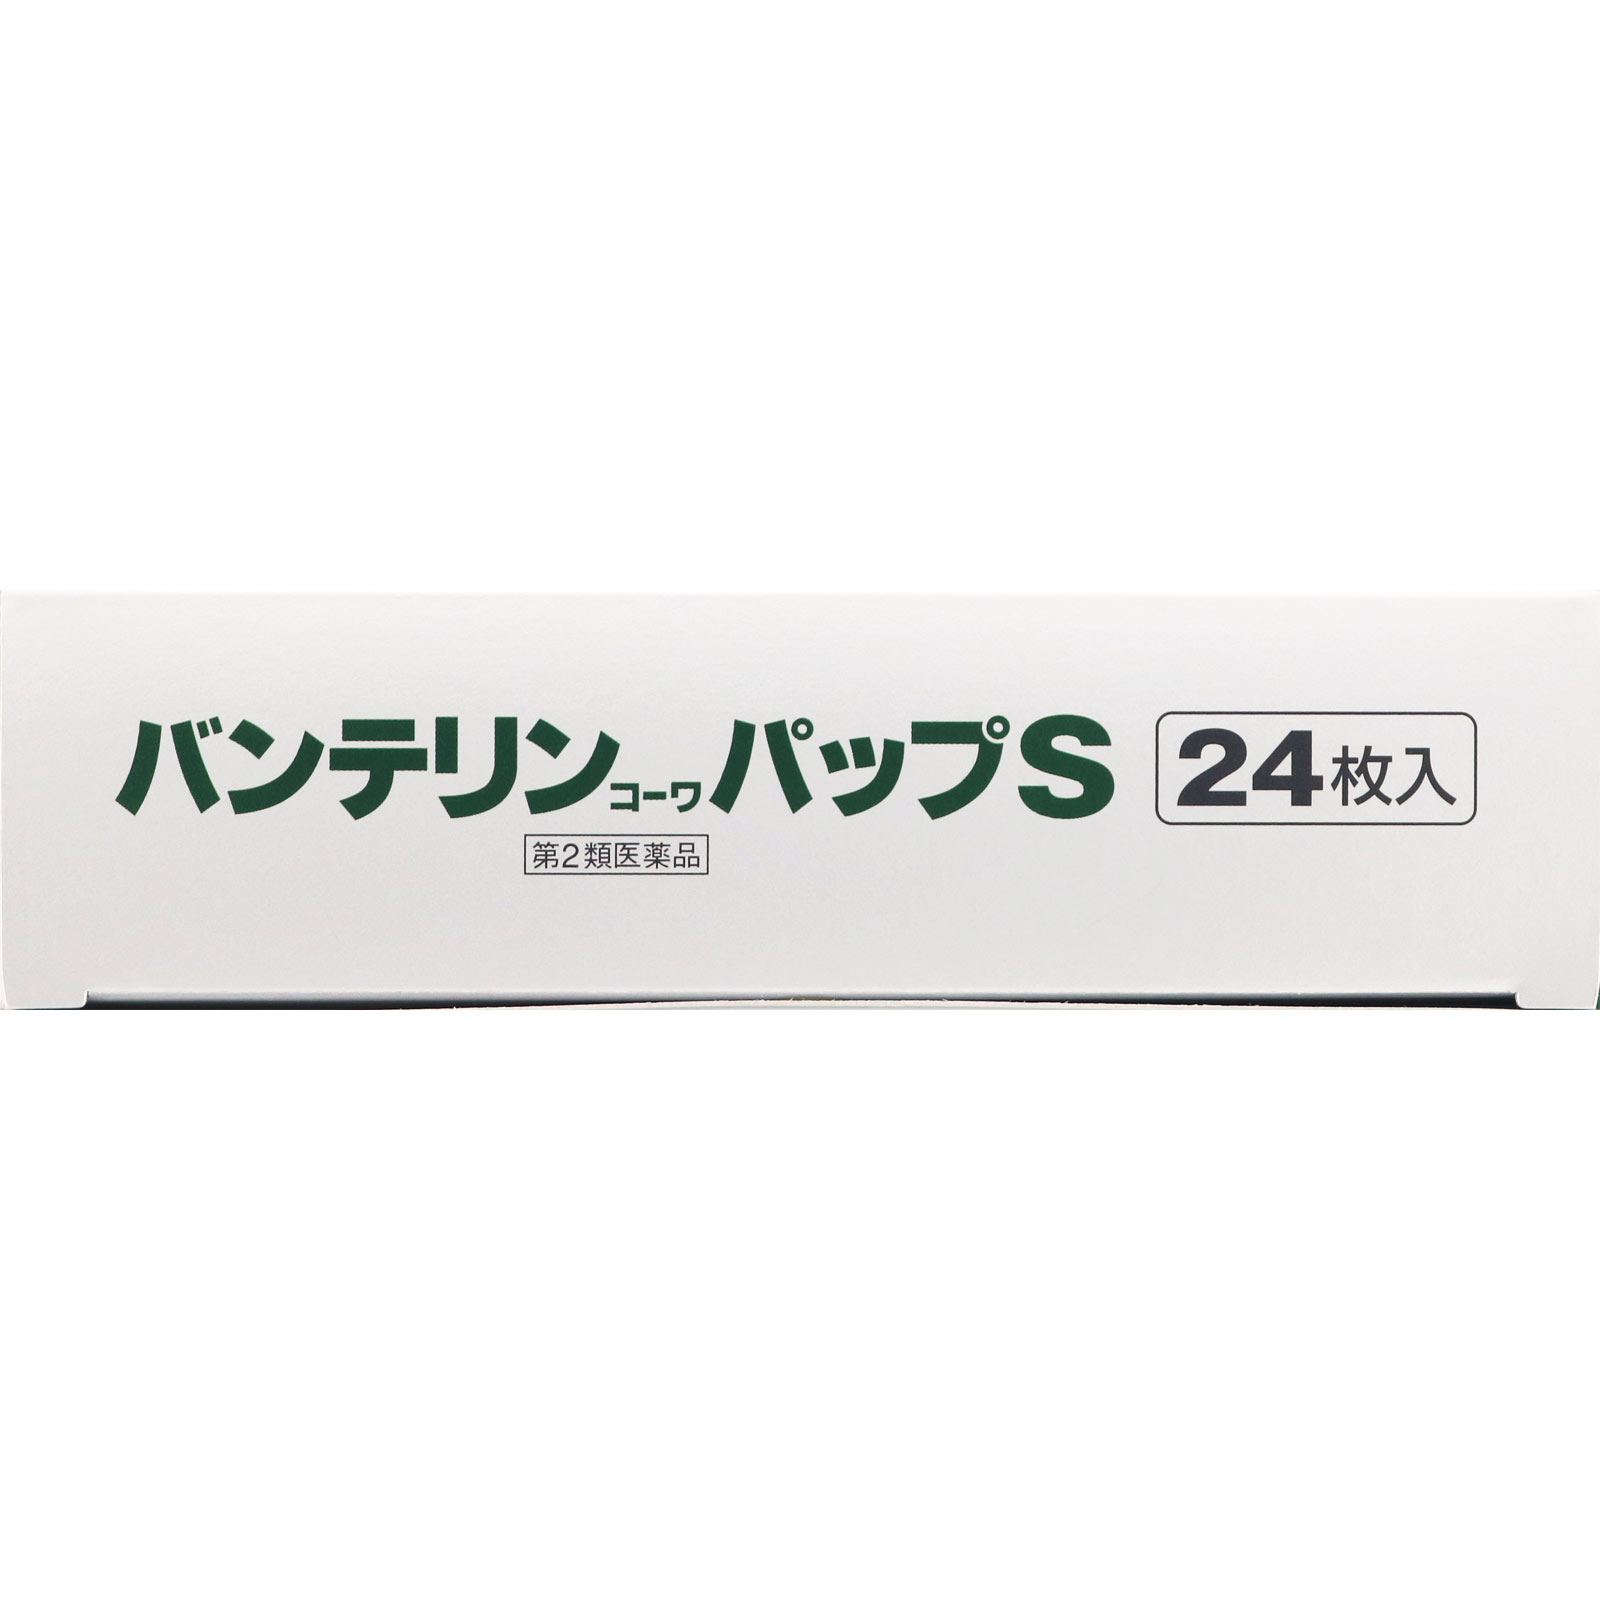 バンテリンコーワパップＳ 24枚 【第二類医薬品】: 医薬品・衛生用品 Tomod's ONLINE SHOP